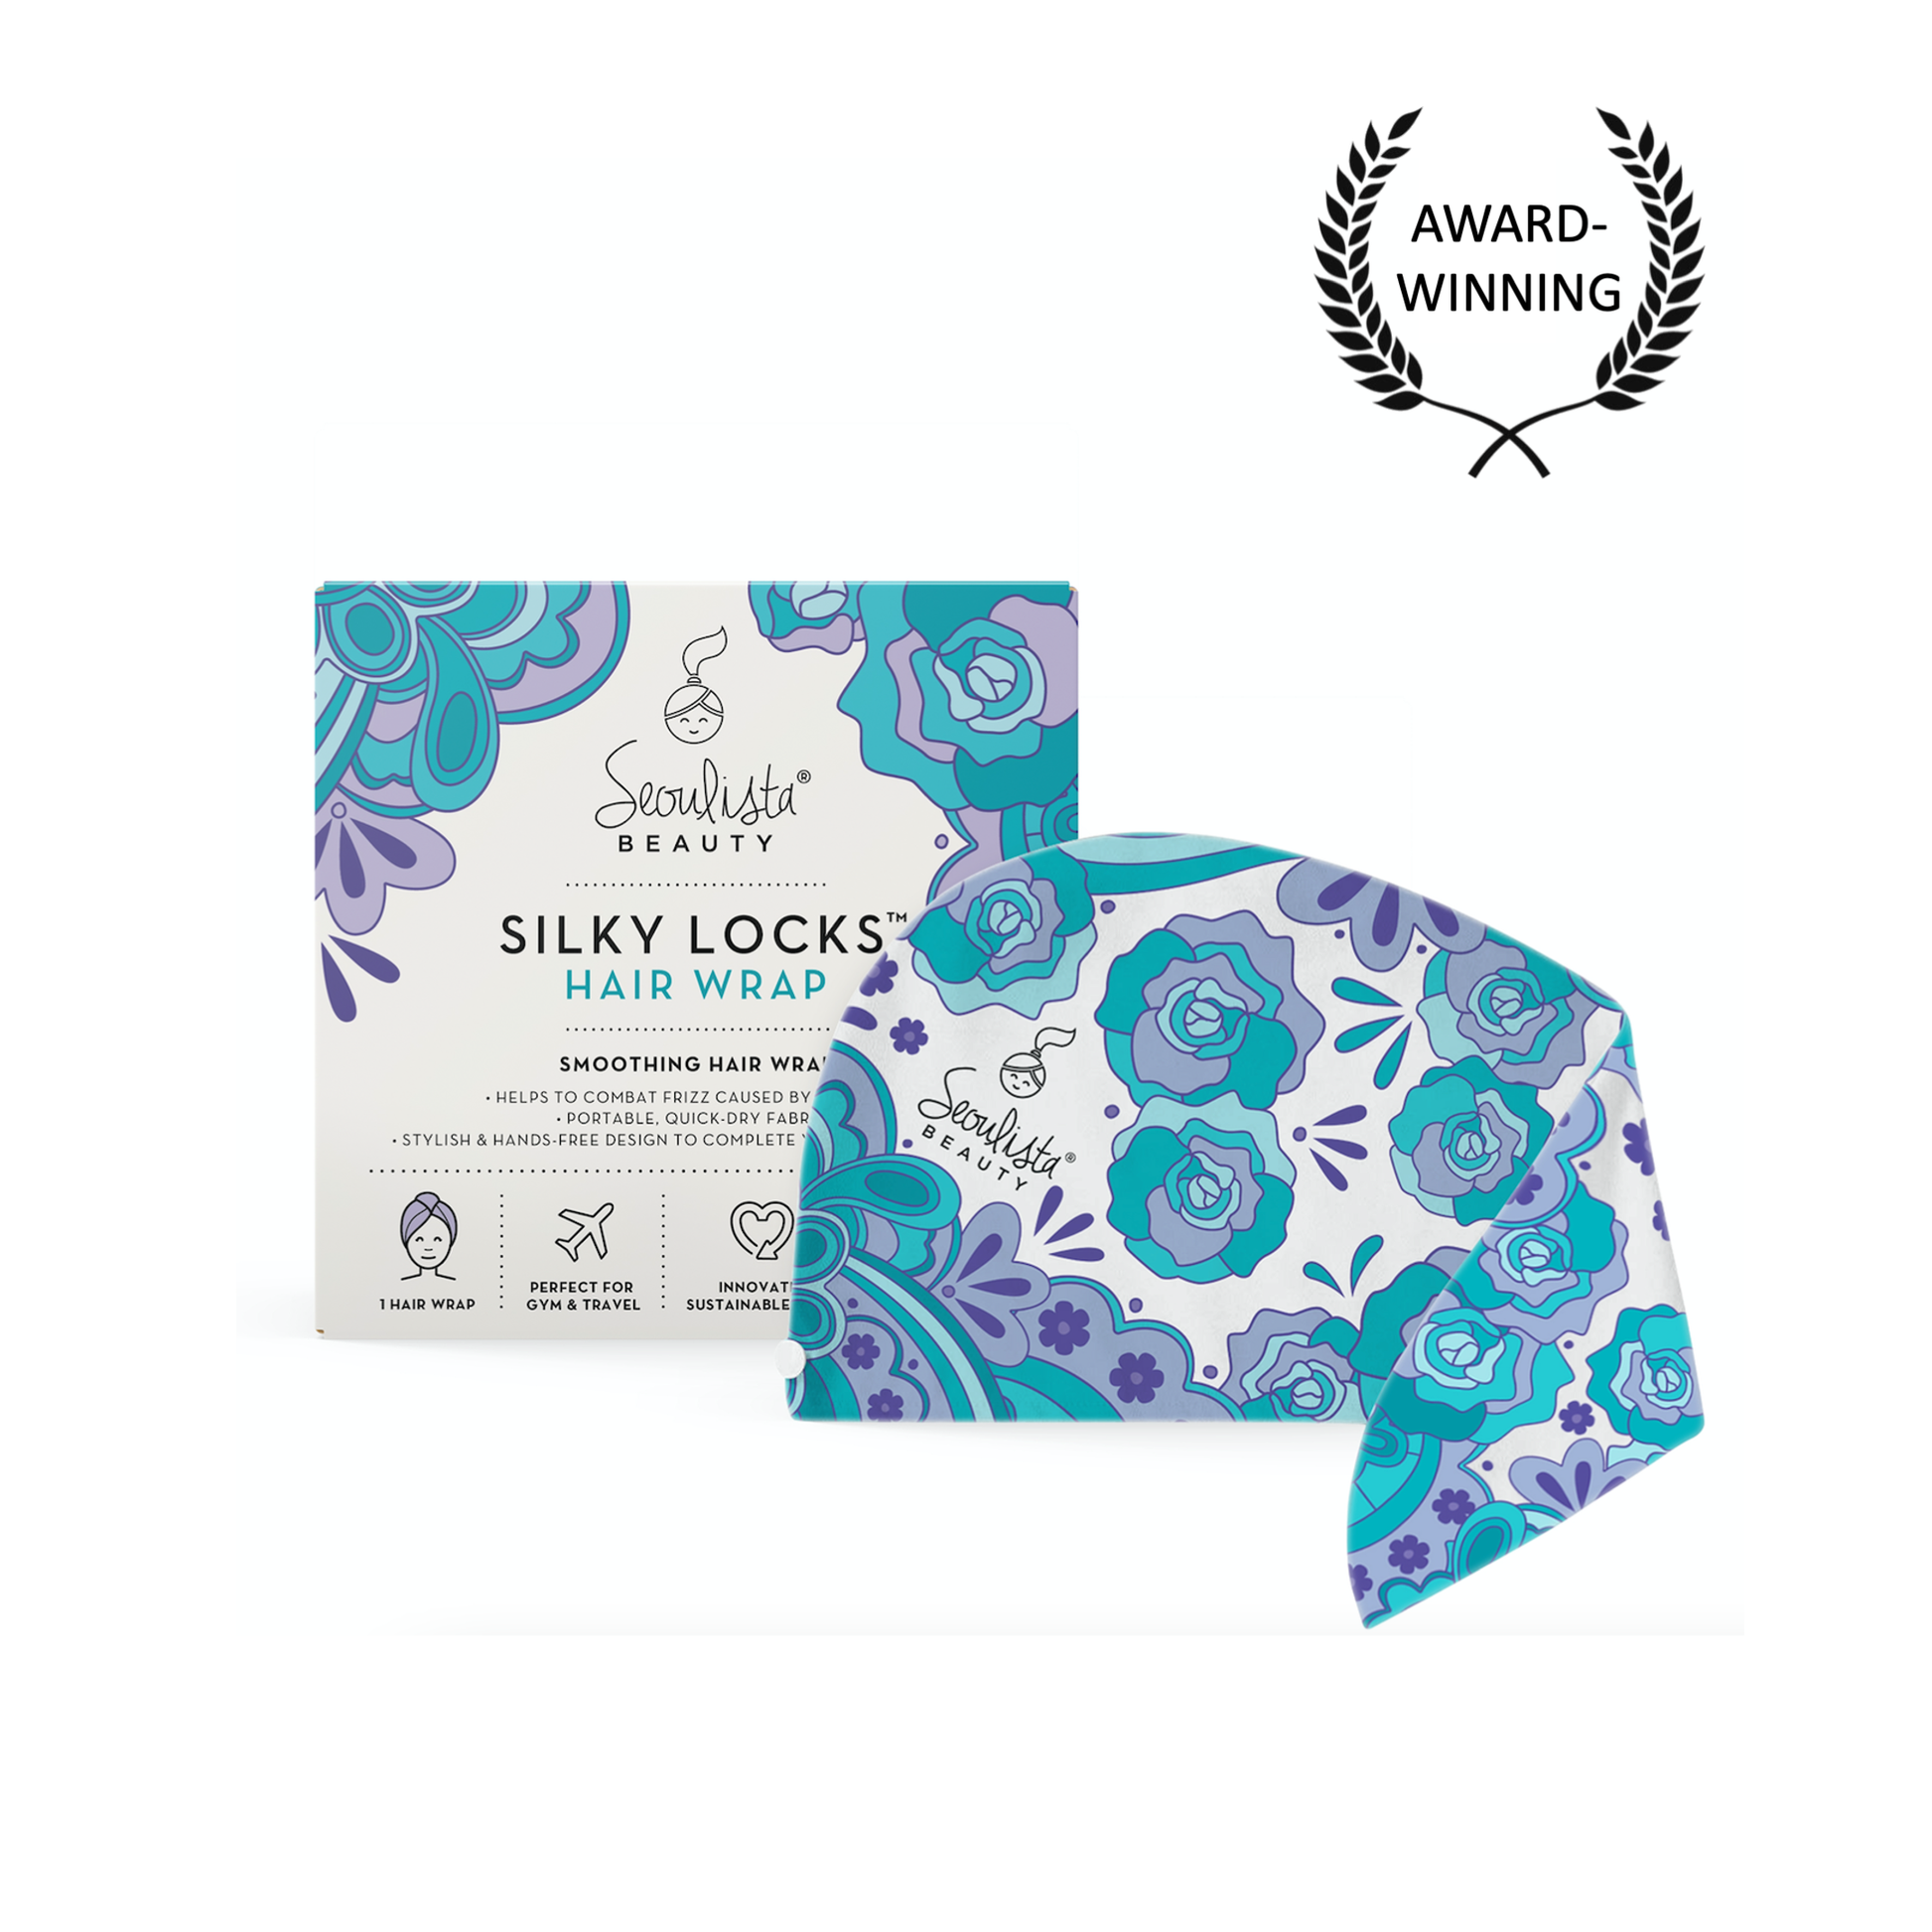 Seoulista Silky Locks® Hair Wrap - Seoulista Beauty